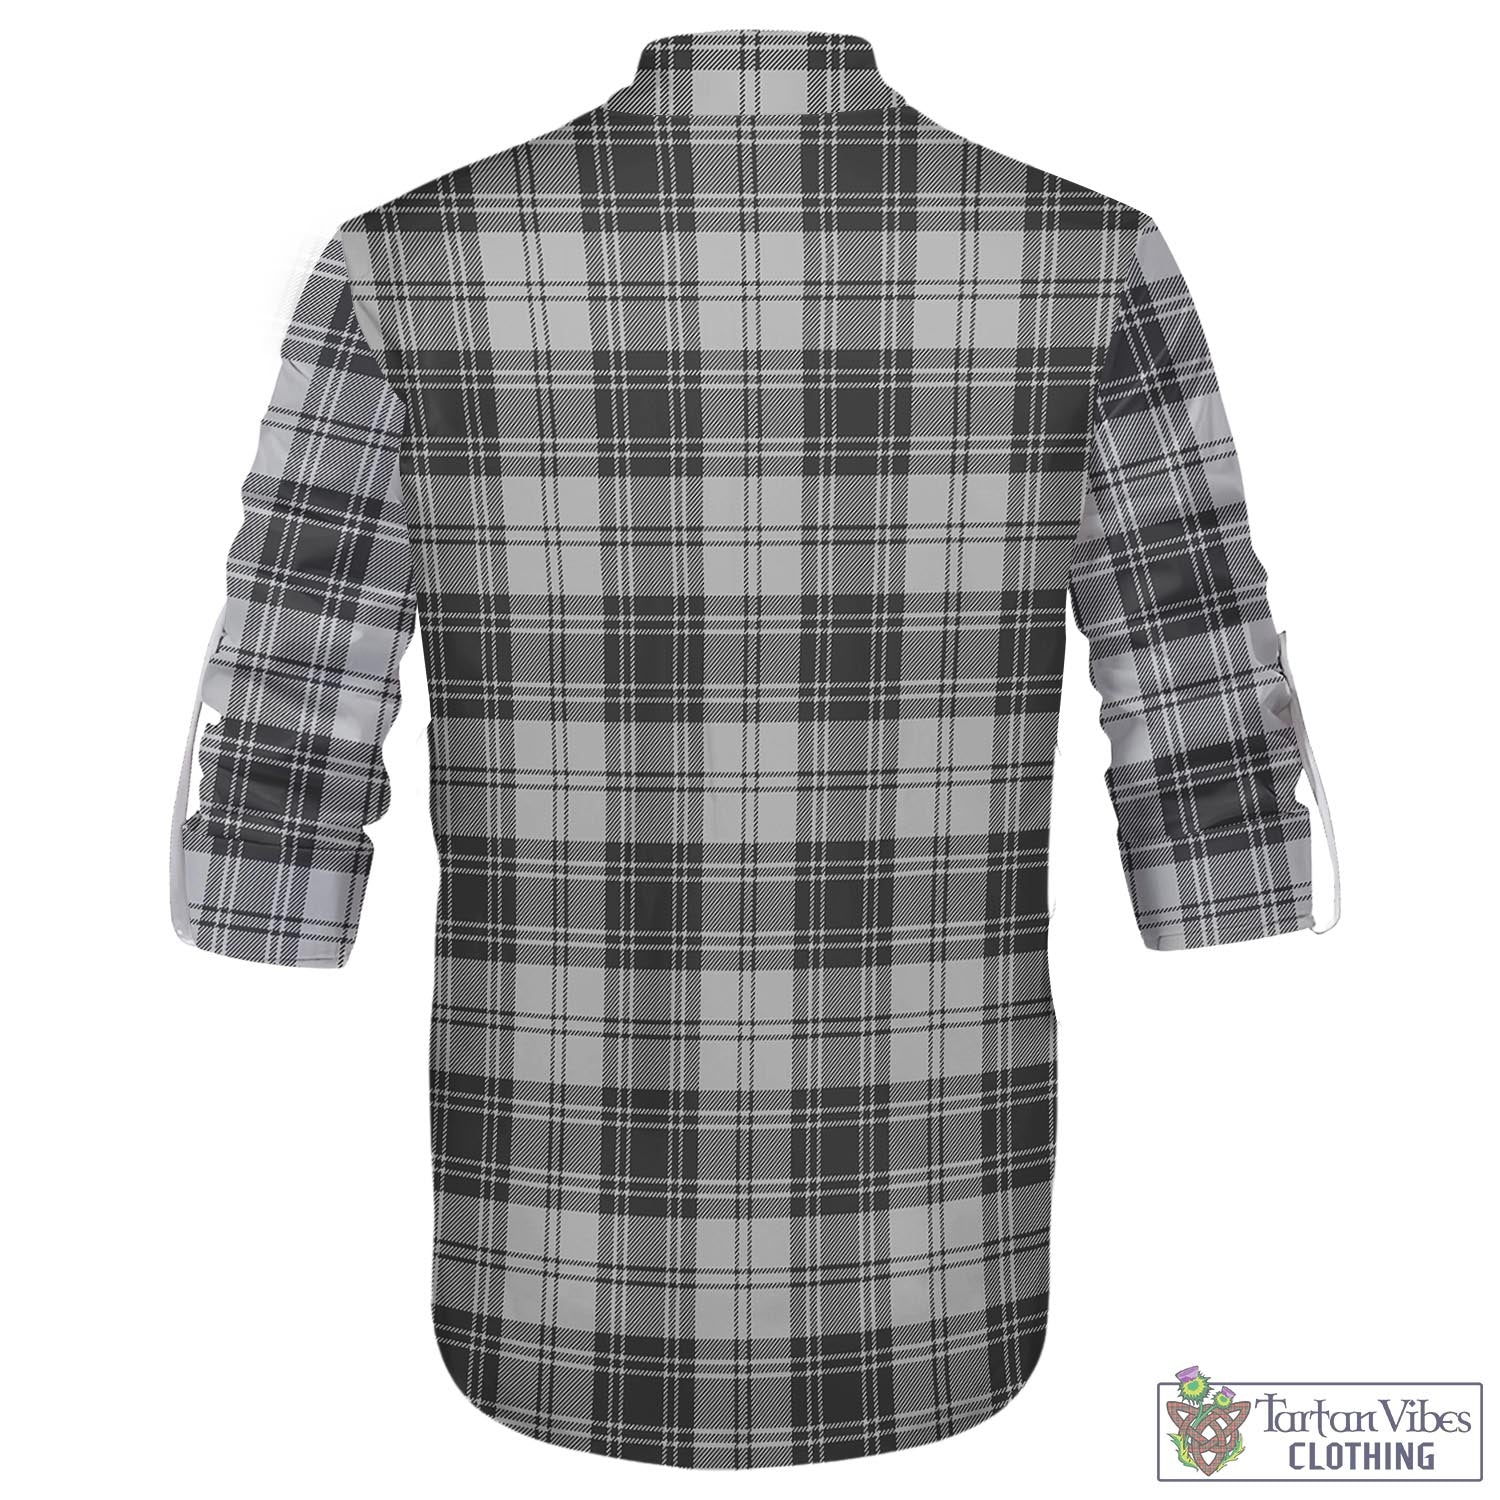 Tartan Vibes Clothing Glendinning Tartan Men's Scottish Traditional Jacobite Ghillie Kilt Shirt with Family Crest